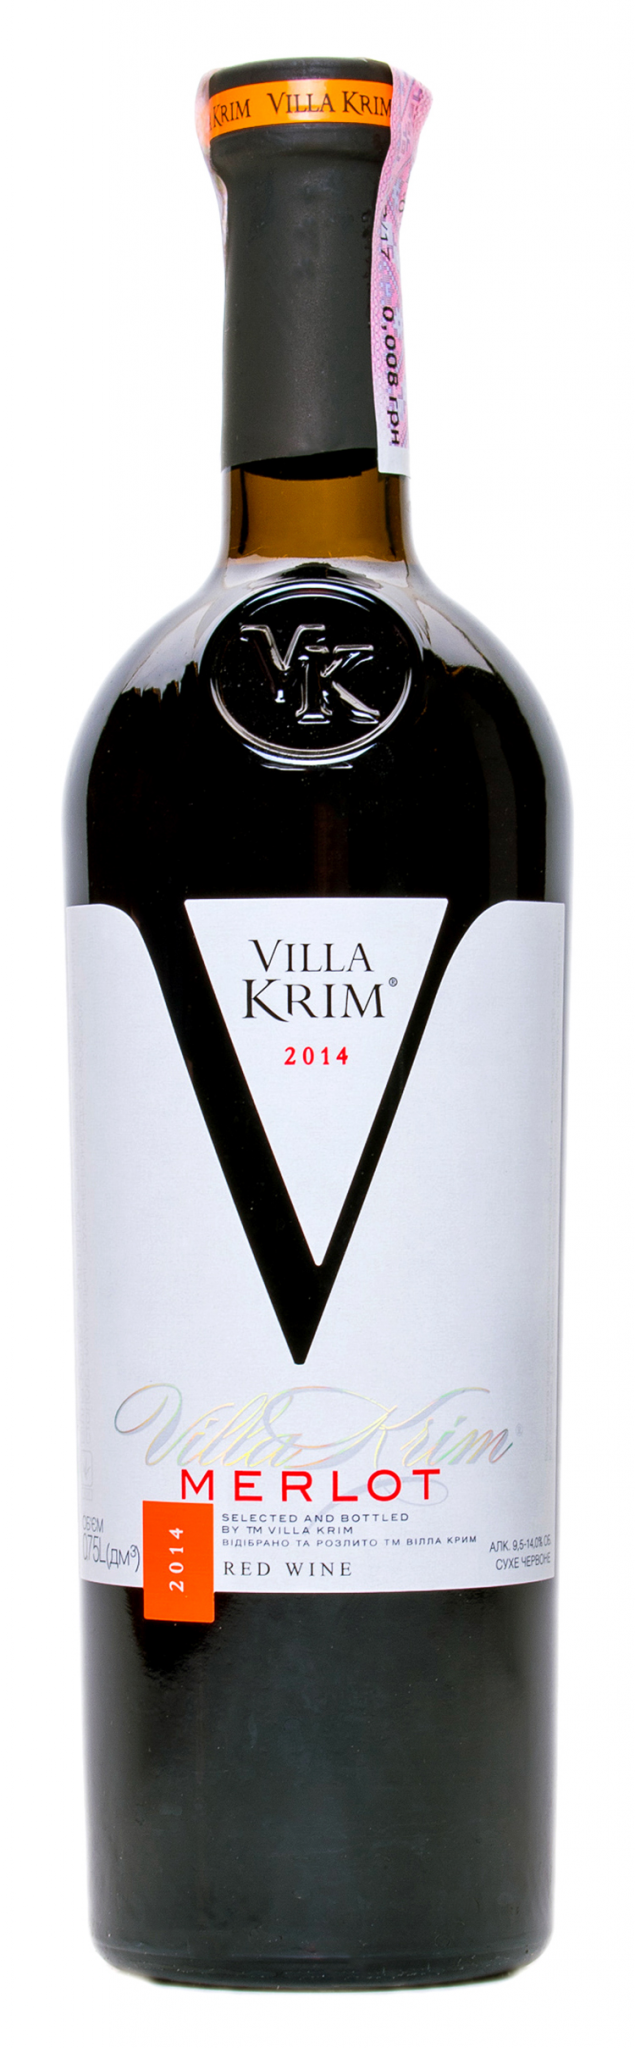 Вино Villa krim Merlot 0.75 л. Villa krim Merlot красное сухое. Villa krim вино красное сухое. Вино Villa krim Мерло кр сухое.